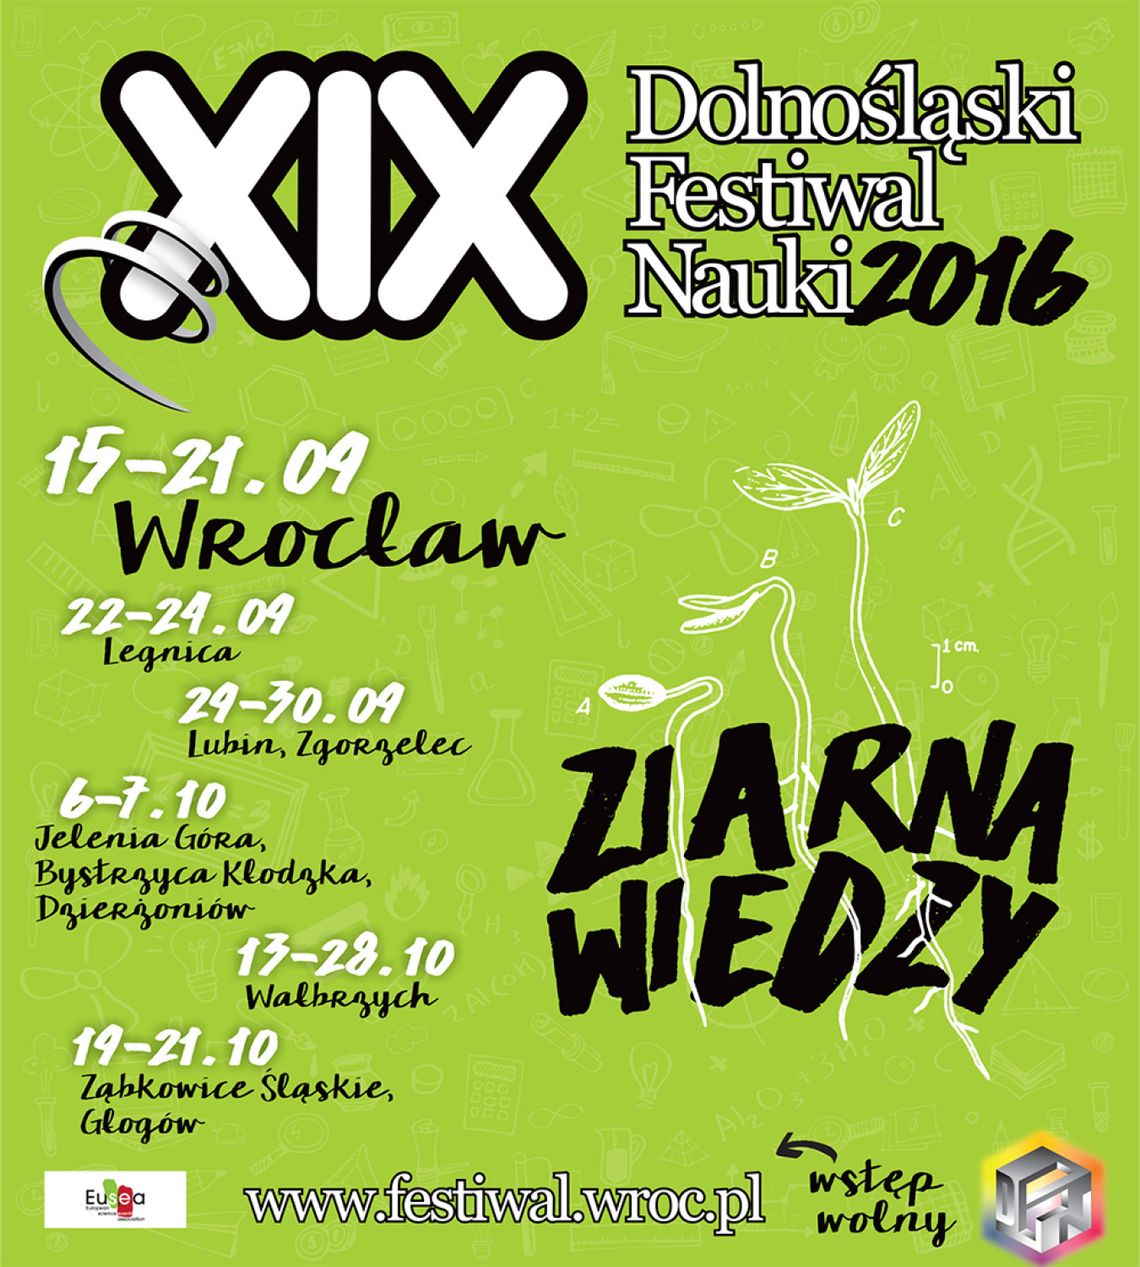 Dolnośląski Festiwal Nauki 2016 